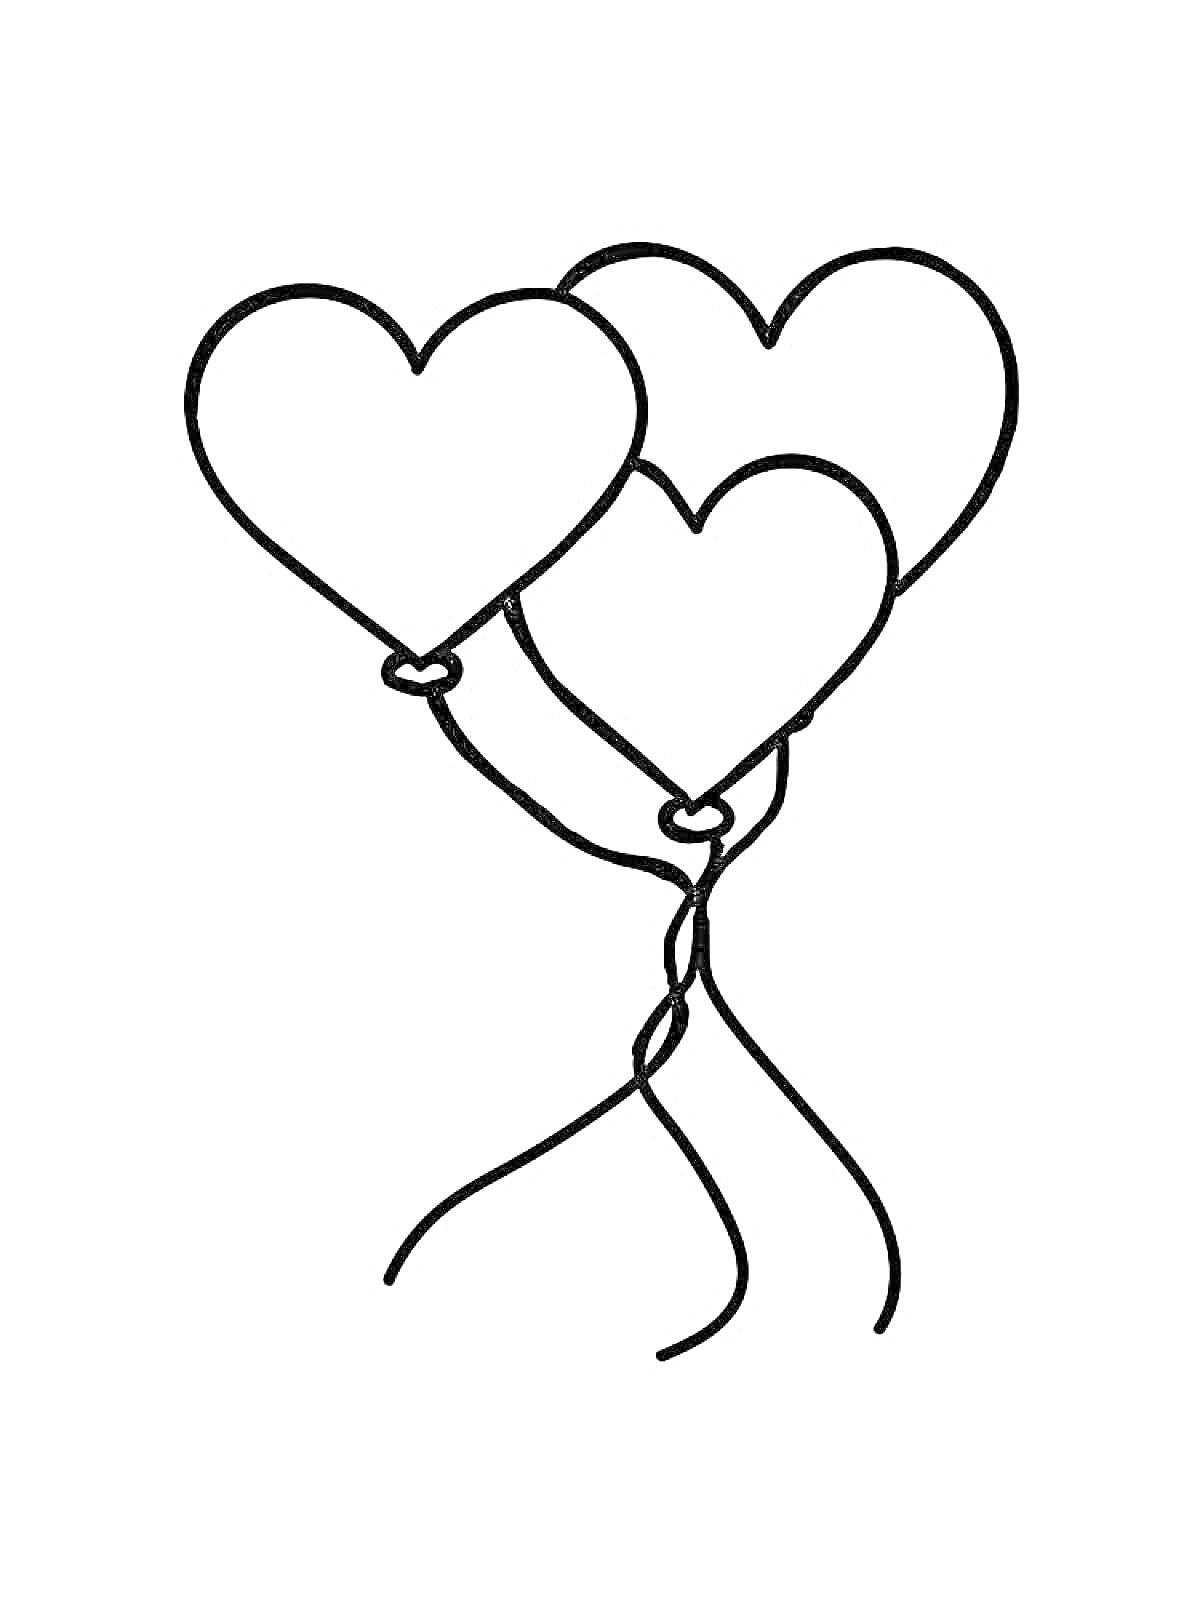 Воздушные шарики в форме сердец (три шарика, связанные вместе)